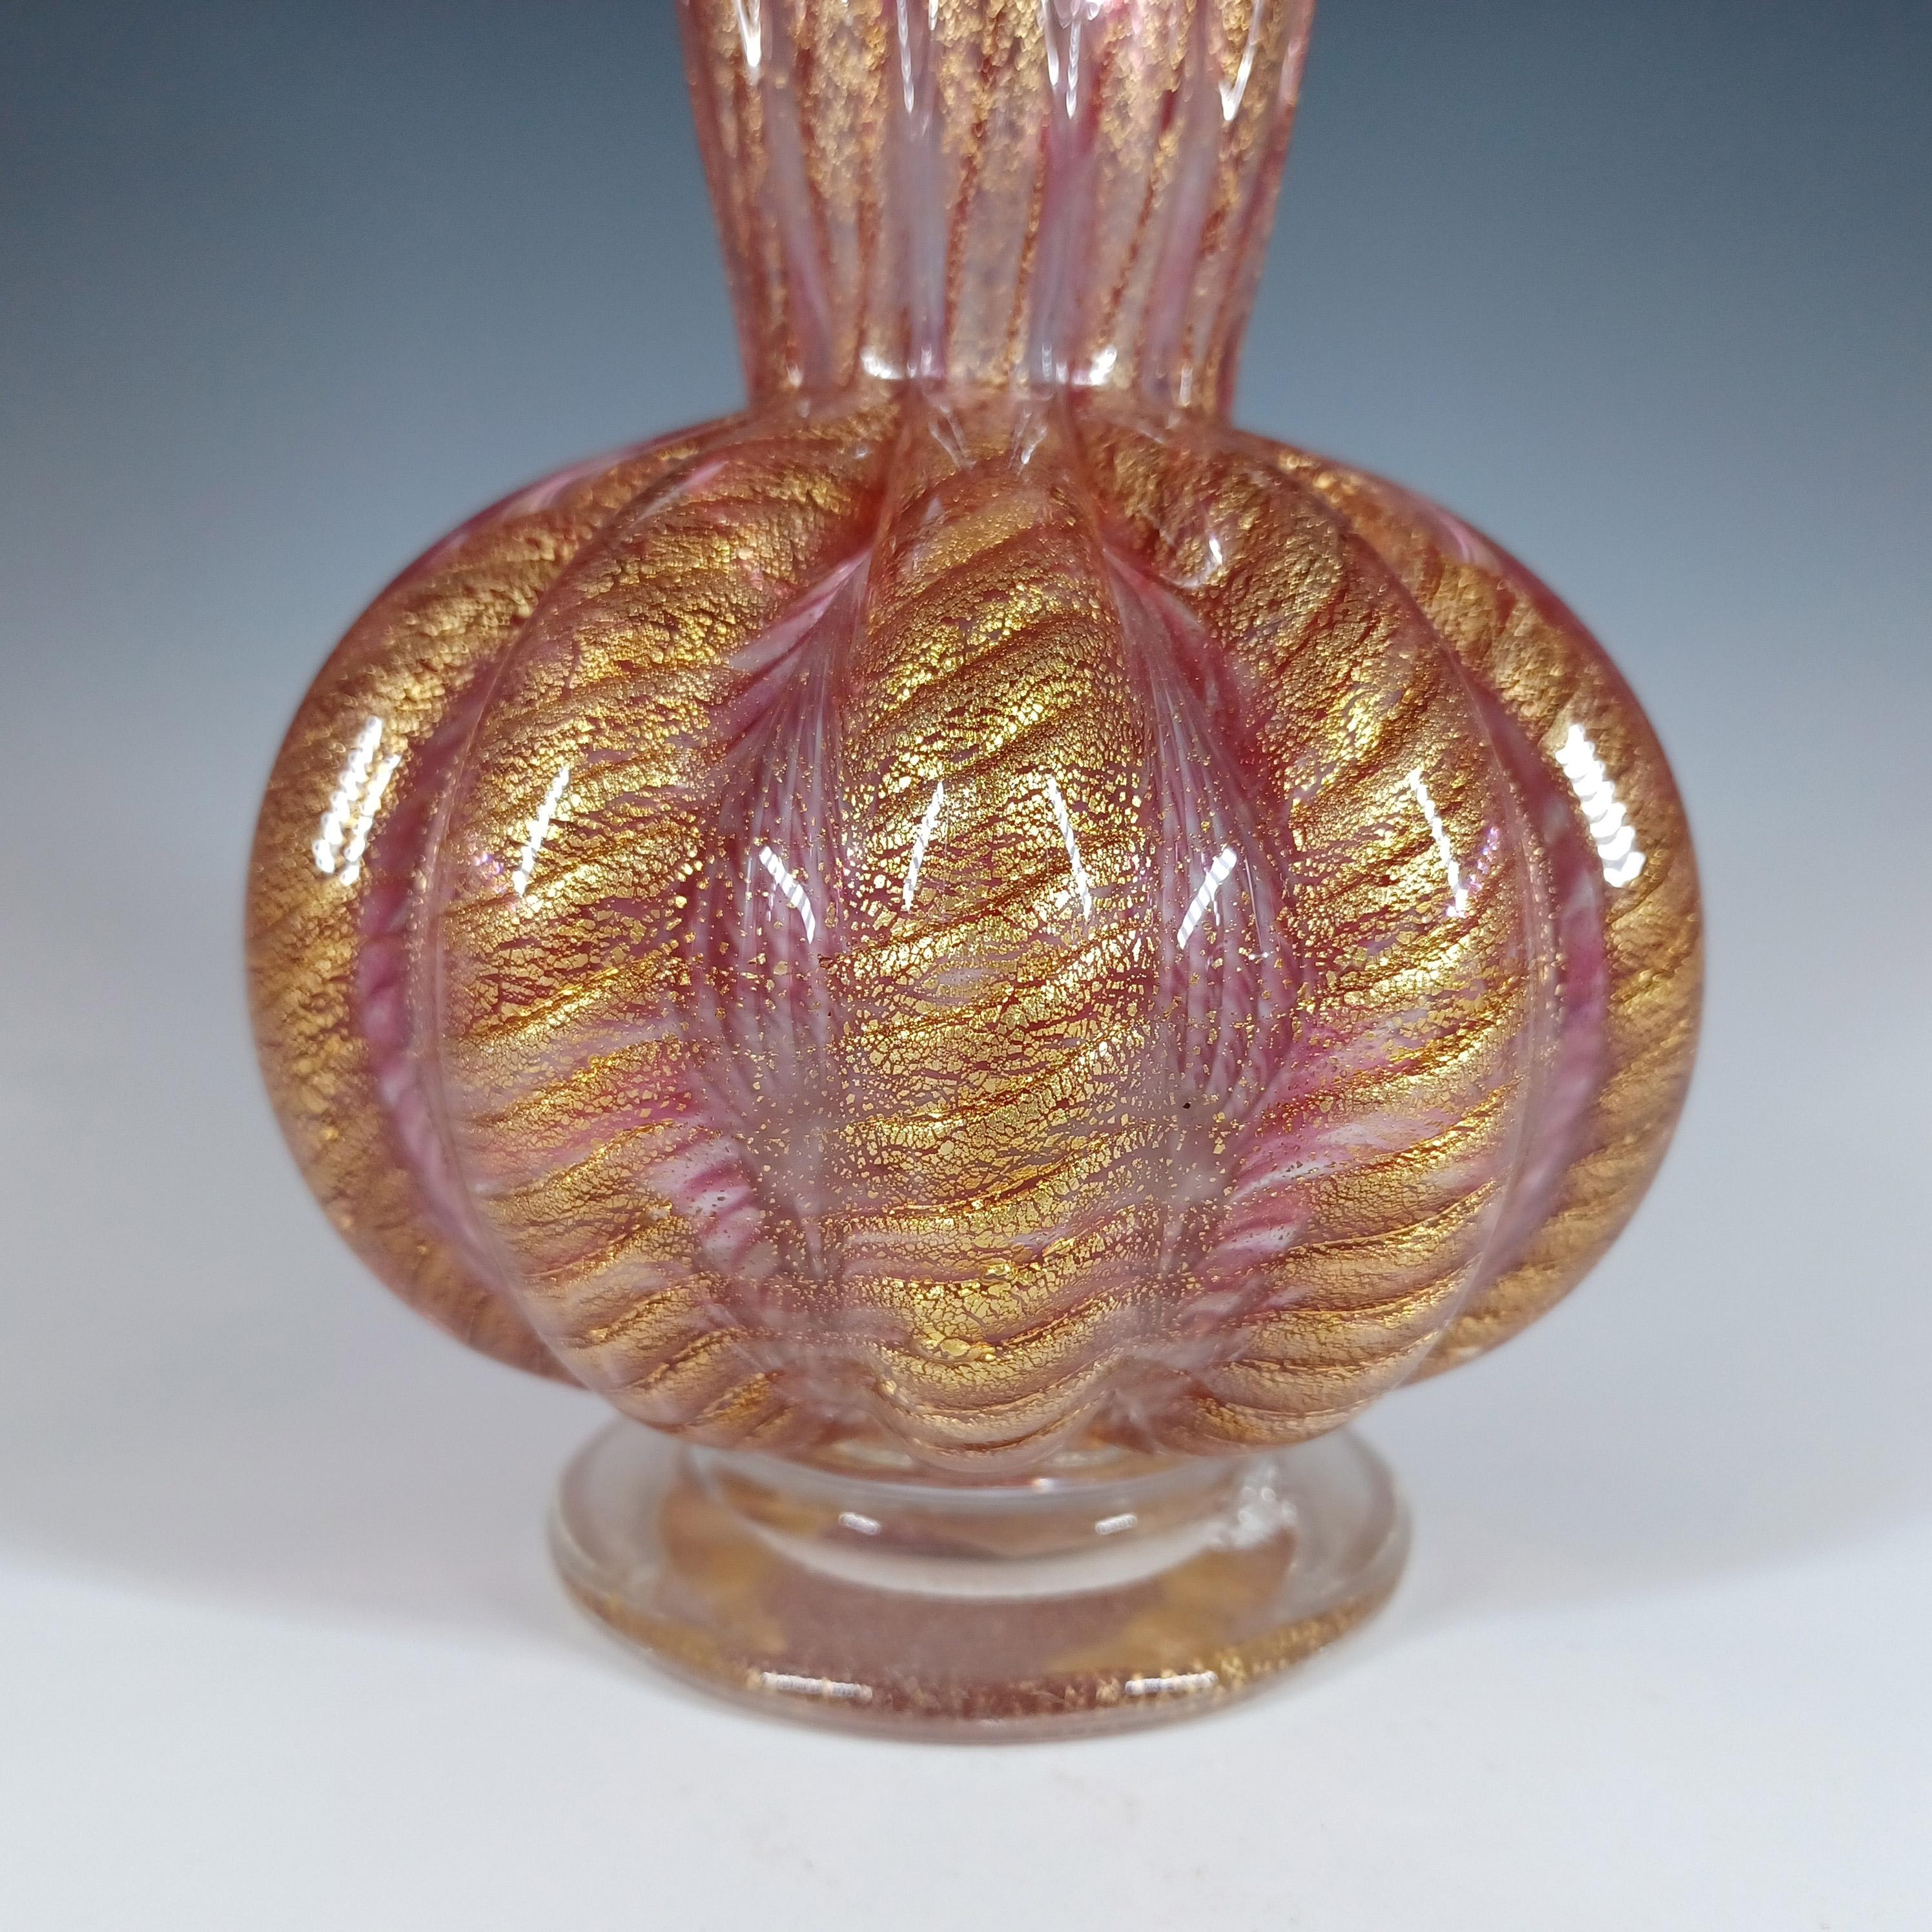 Voici un magnifique vase en verre vénitien des années 1950/60, fabriqué sur l'île de Murano, près de Venise, en Italie. Cette pièce a été fabriquée par Barovier&Toso et fait partie de la gamme Cordonato d'Oro.

Des pièces très similaires sont